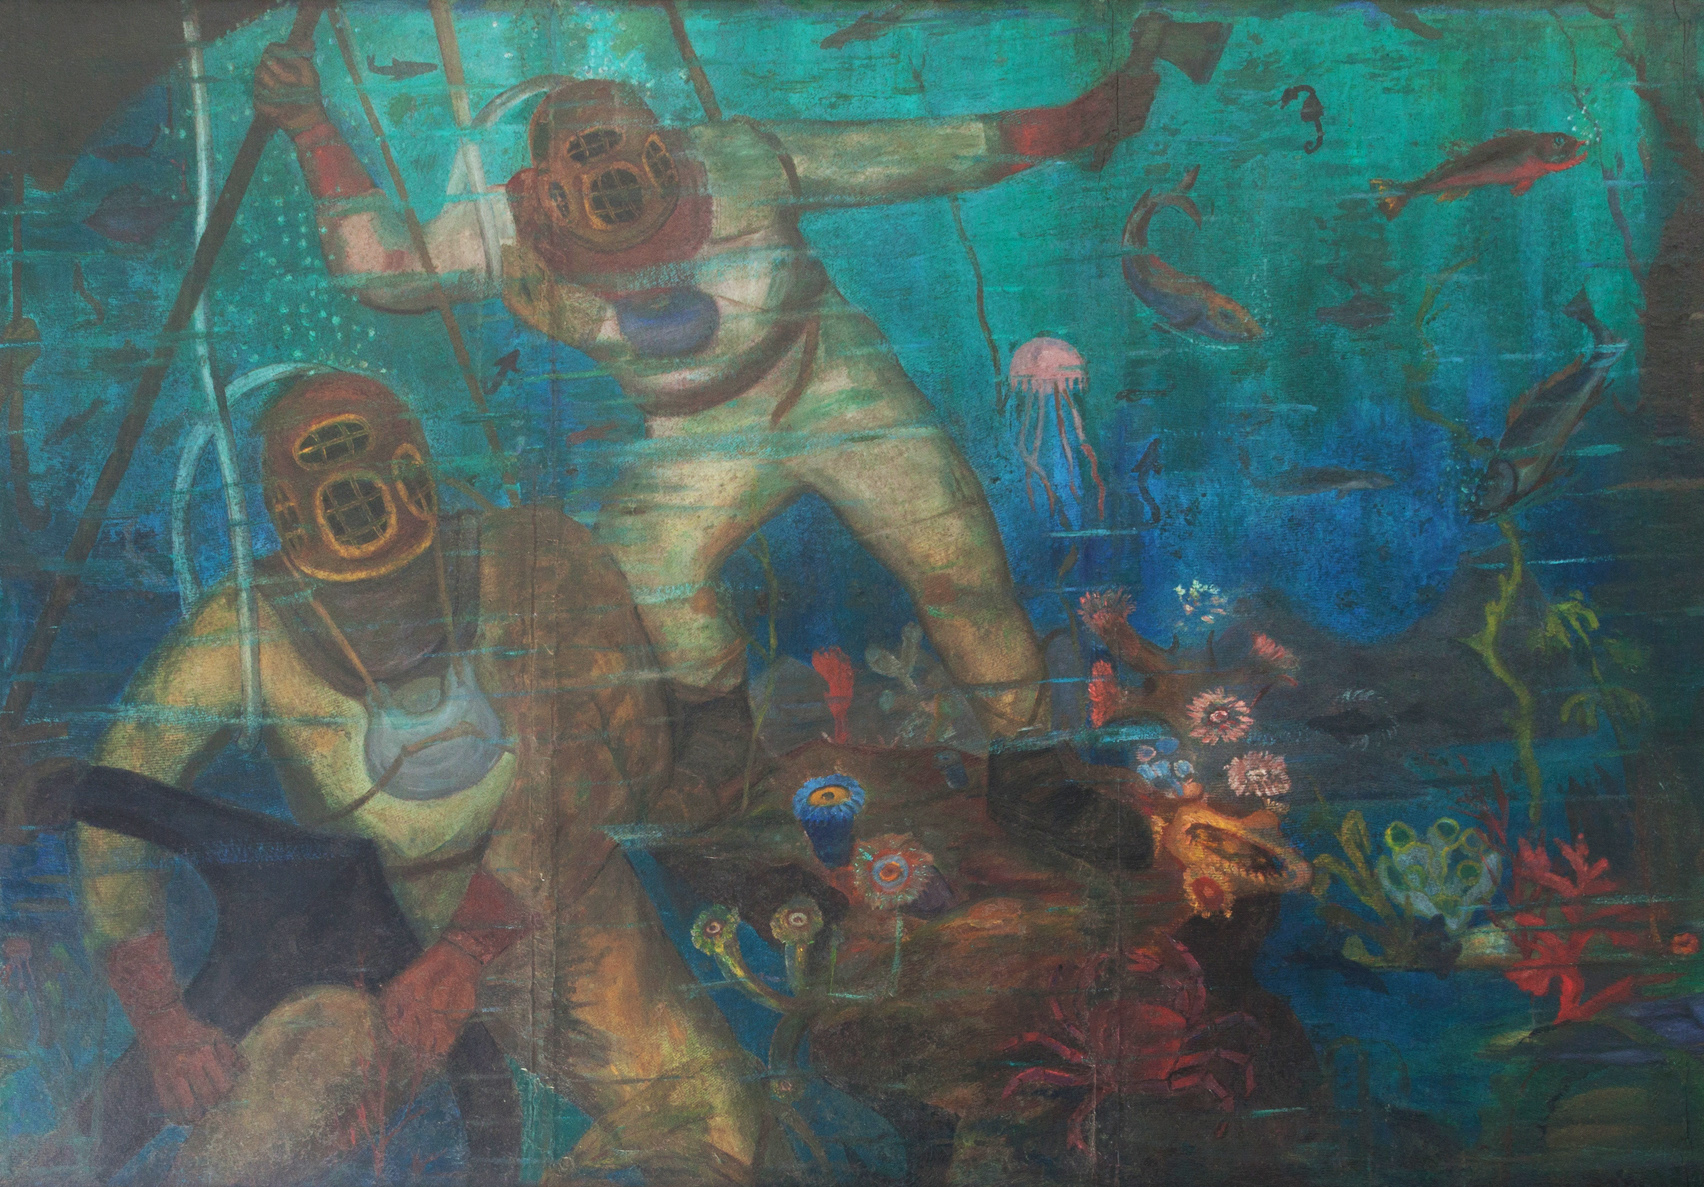 Buzos en el fondo del mar: Especialistas de la UNSAM restauraron tres murales de Benito Quinquela Martín